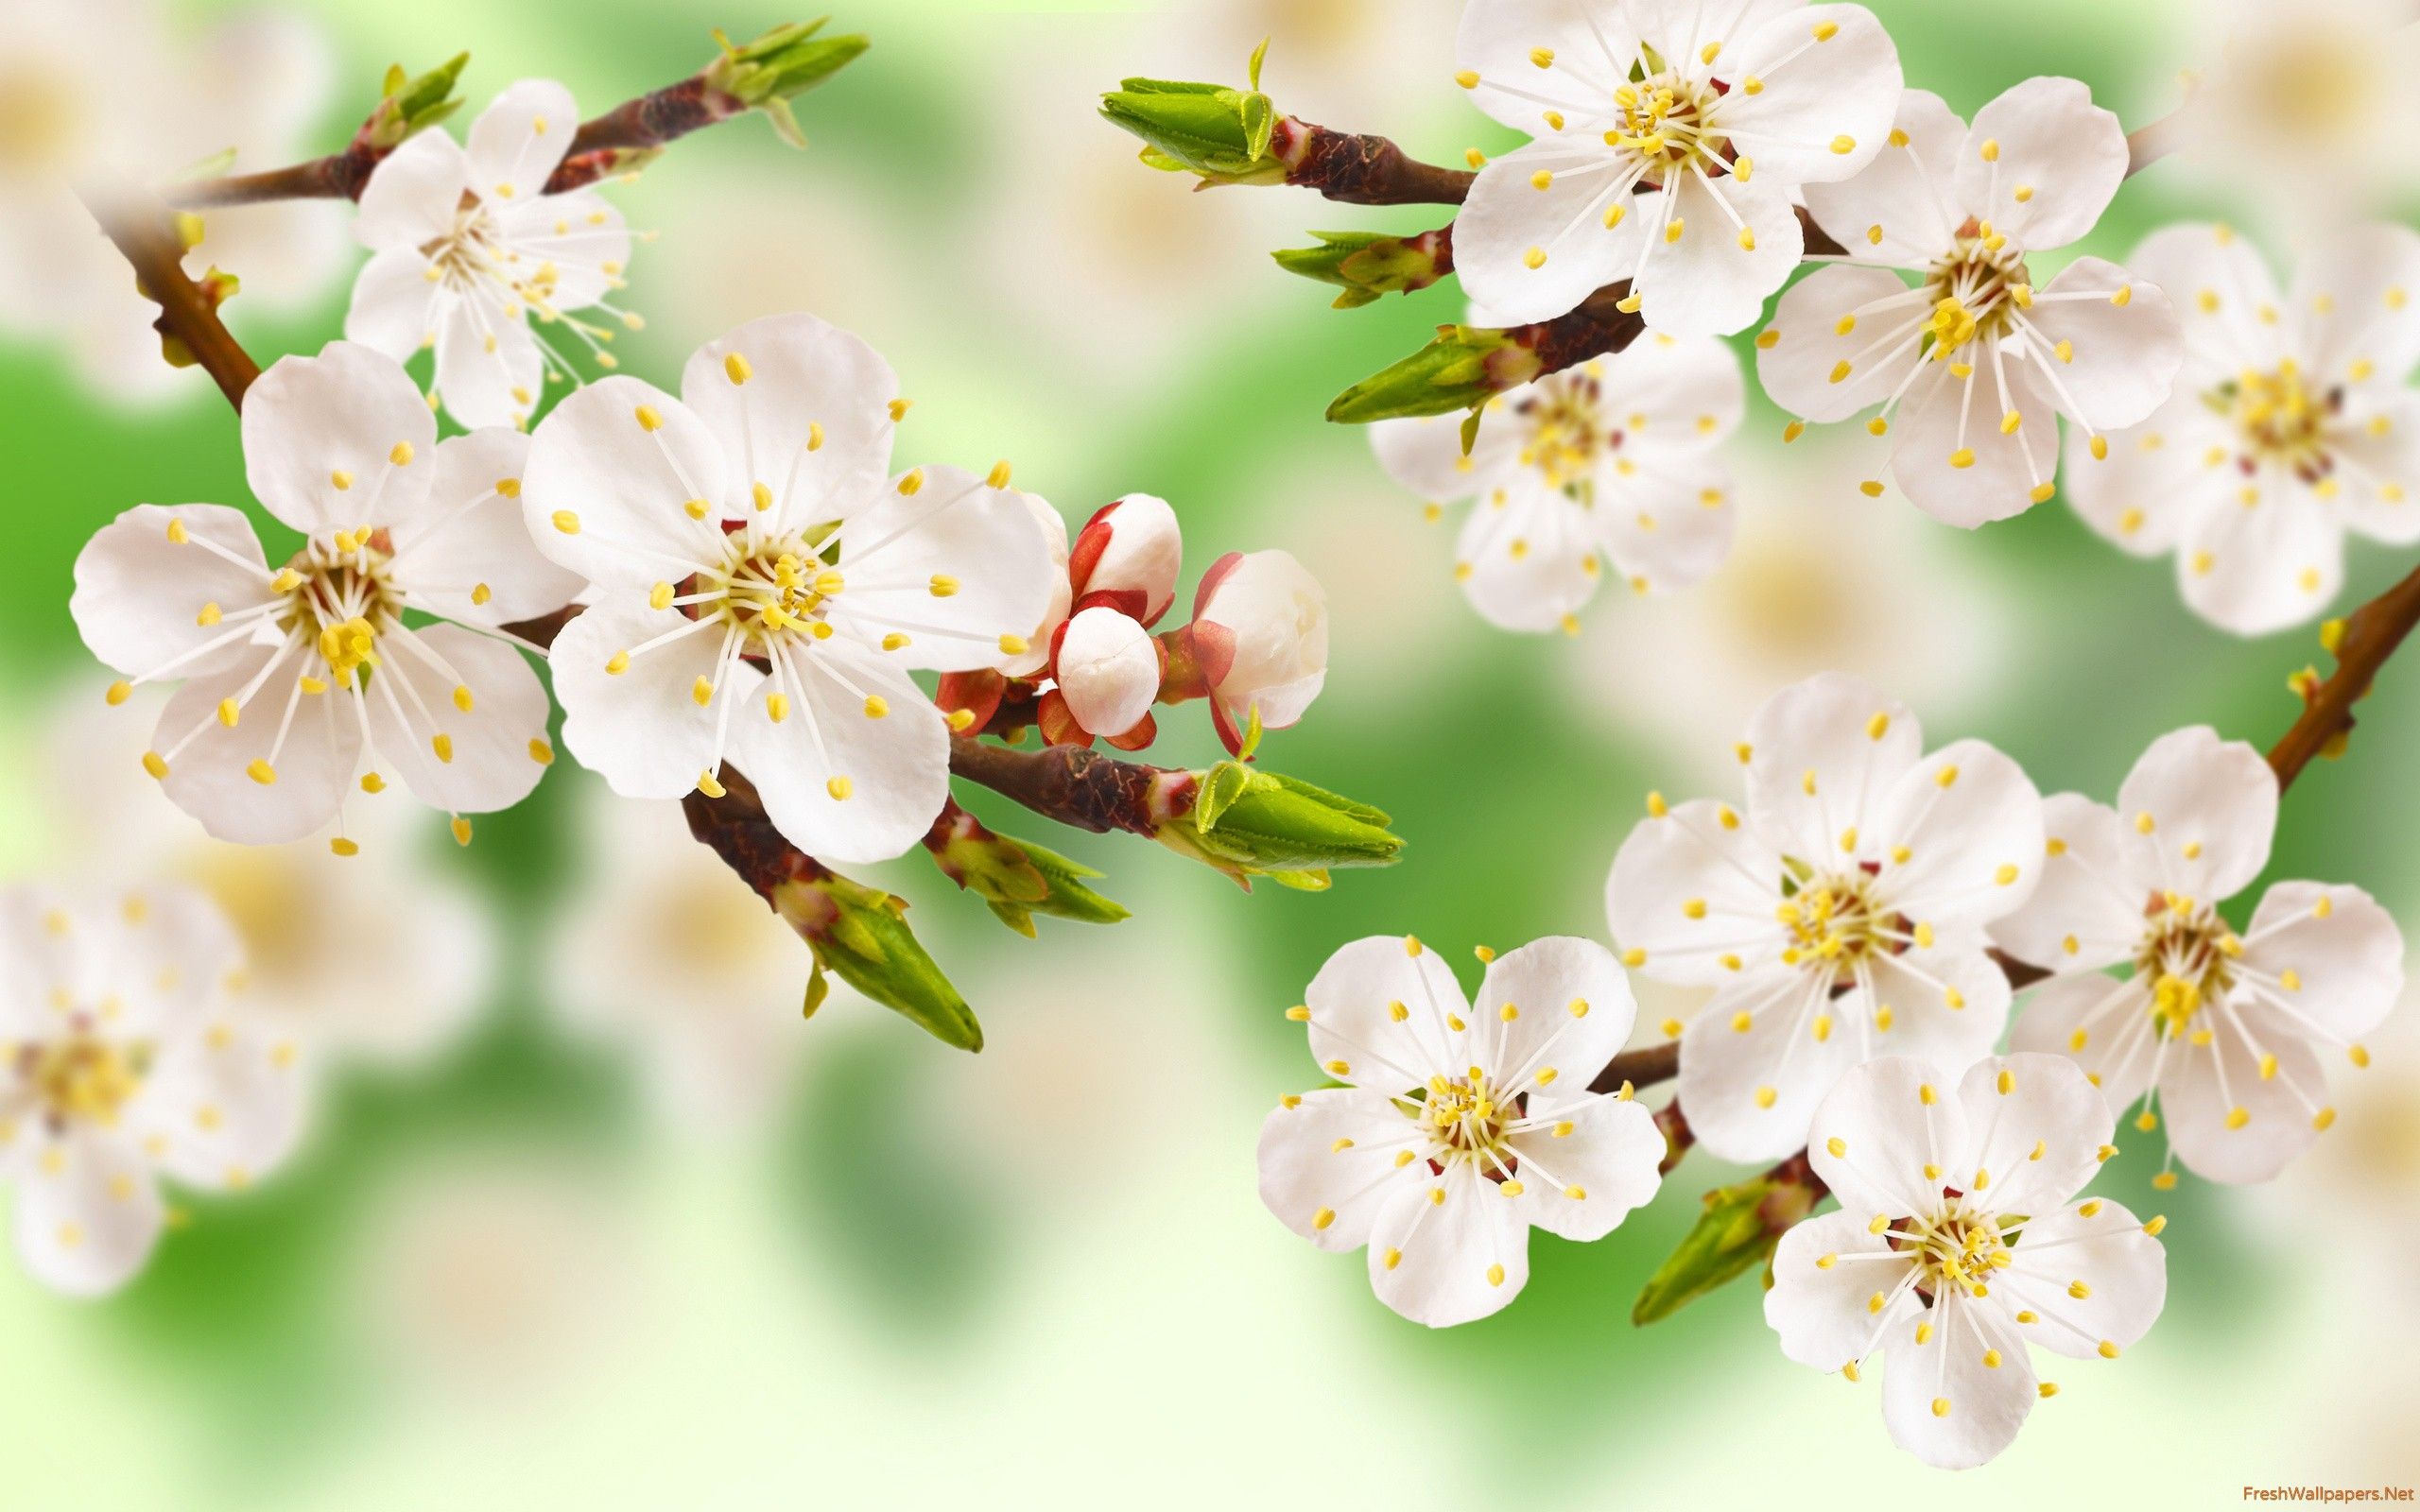 تصویر دیجیتالی نقاشی شده از شکوفه های بهاری نونهال سیب